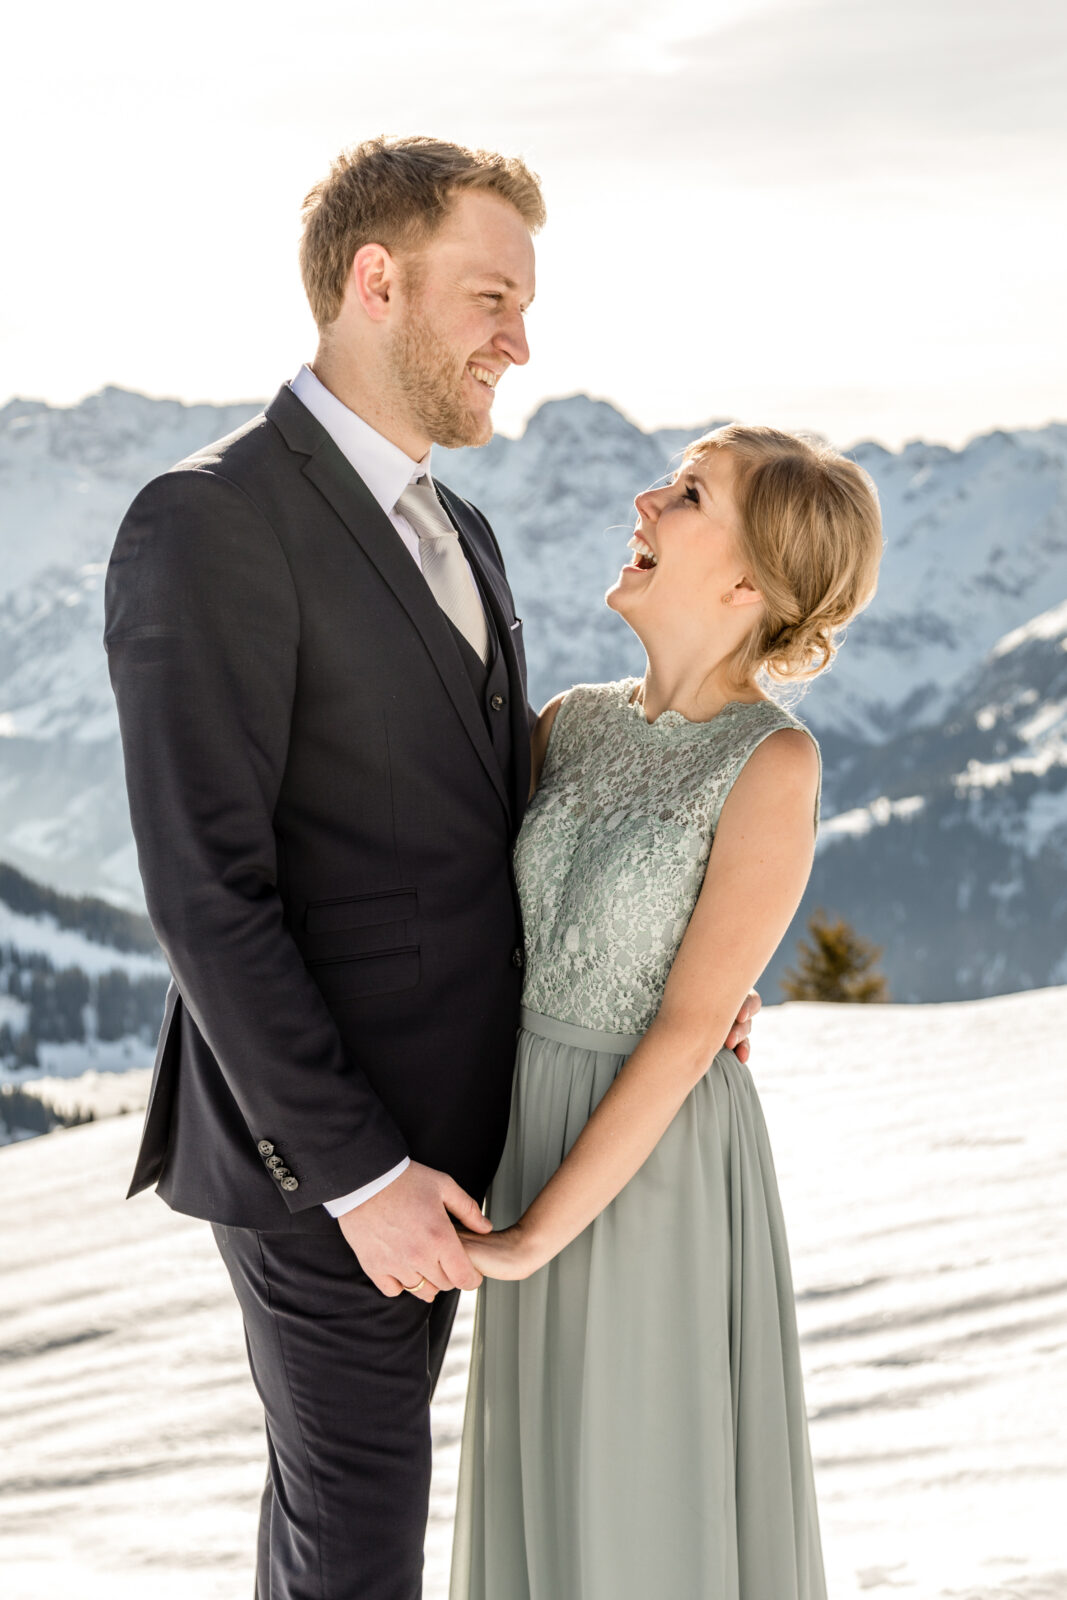 Hochzeit am Berg im Winter in Österreich